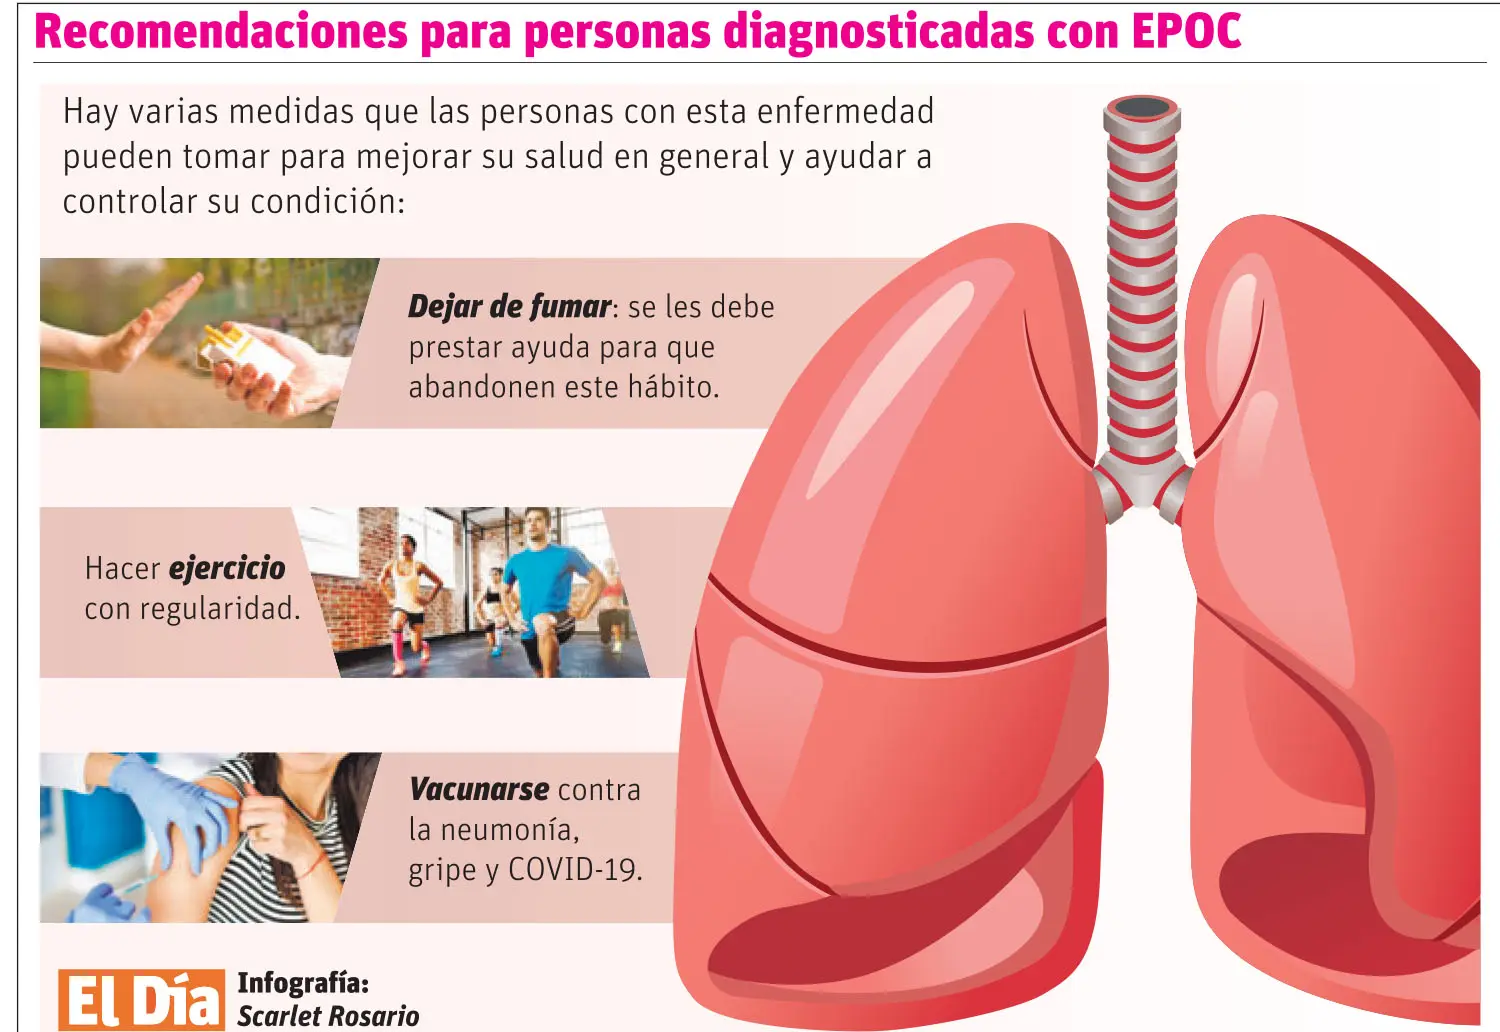 Enfermedad pulmonar obstructiva crónica es tercera causa de muerte en el mundo